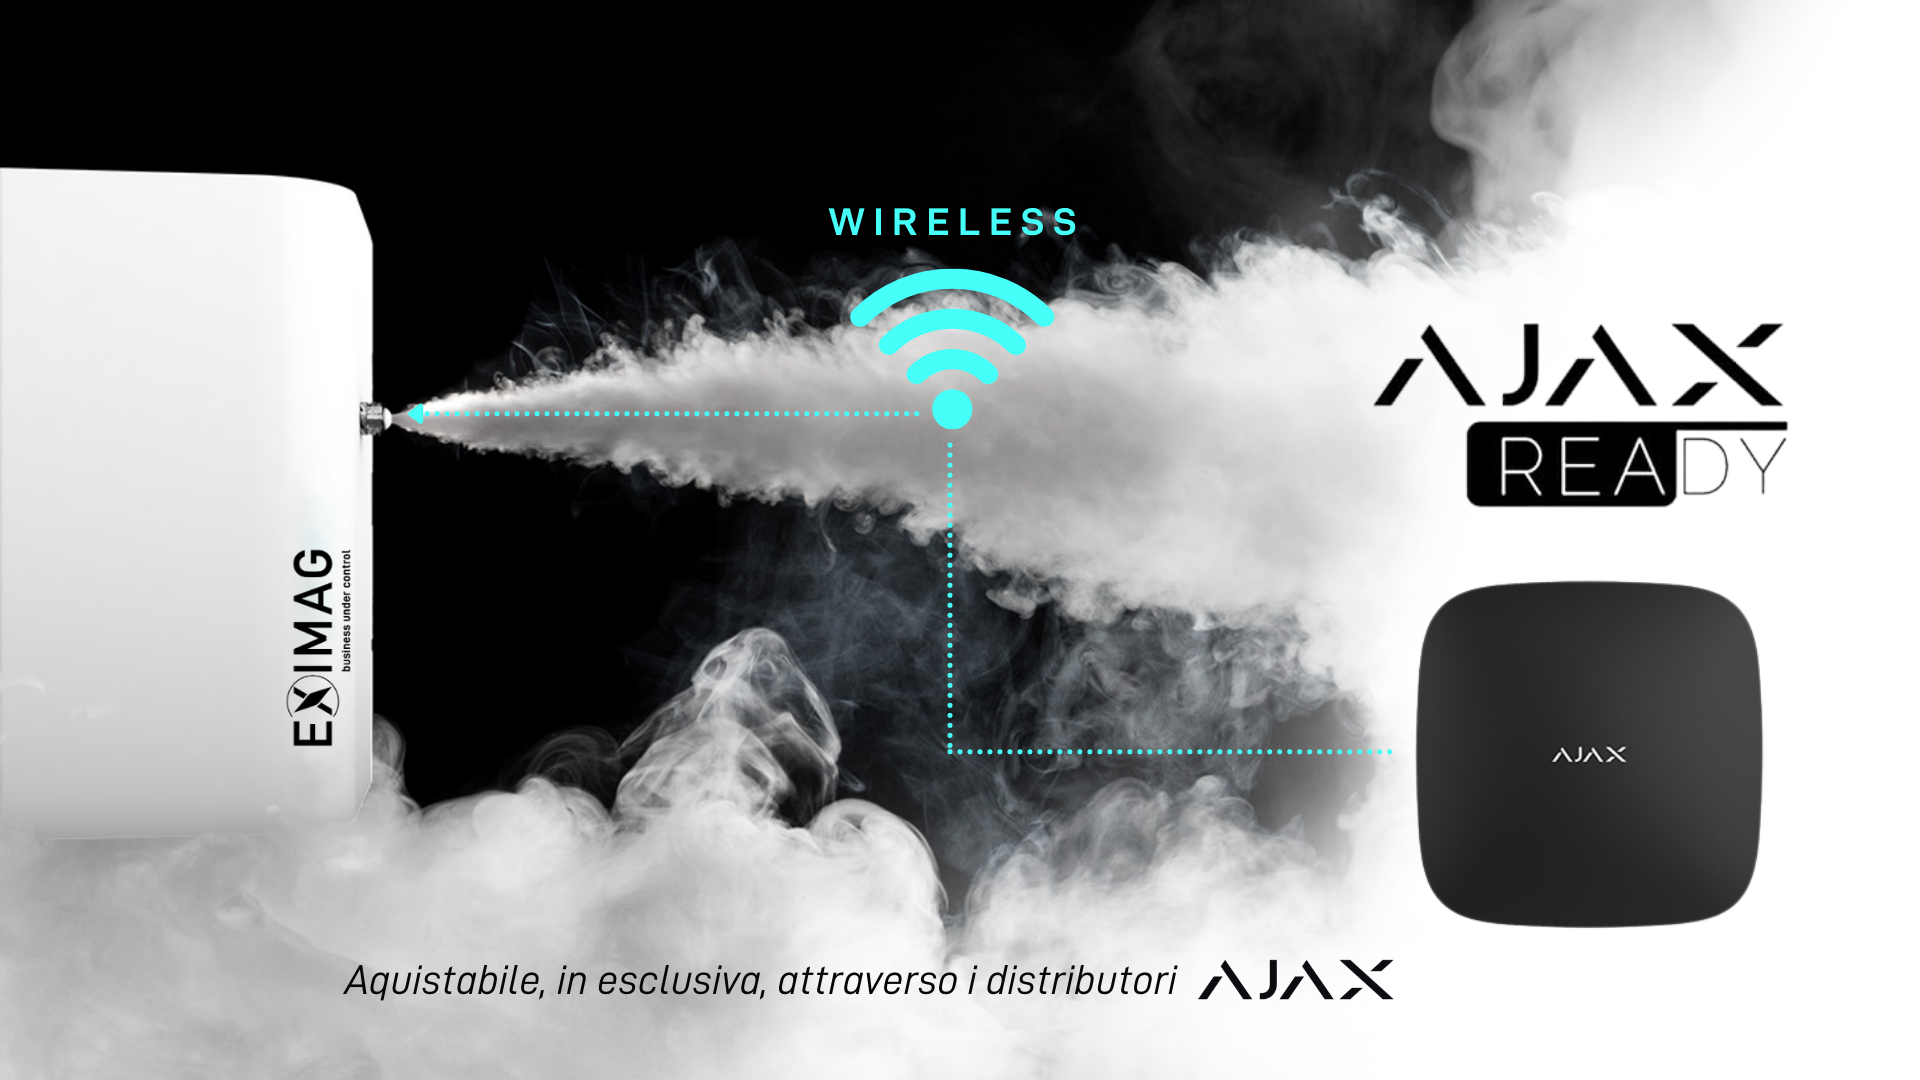 AJAX READY | Il sistema Nebbiogeno con il sistema di allarme nativamente integrato